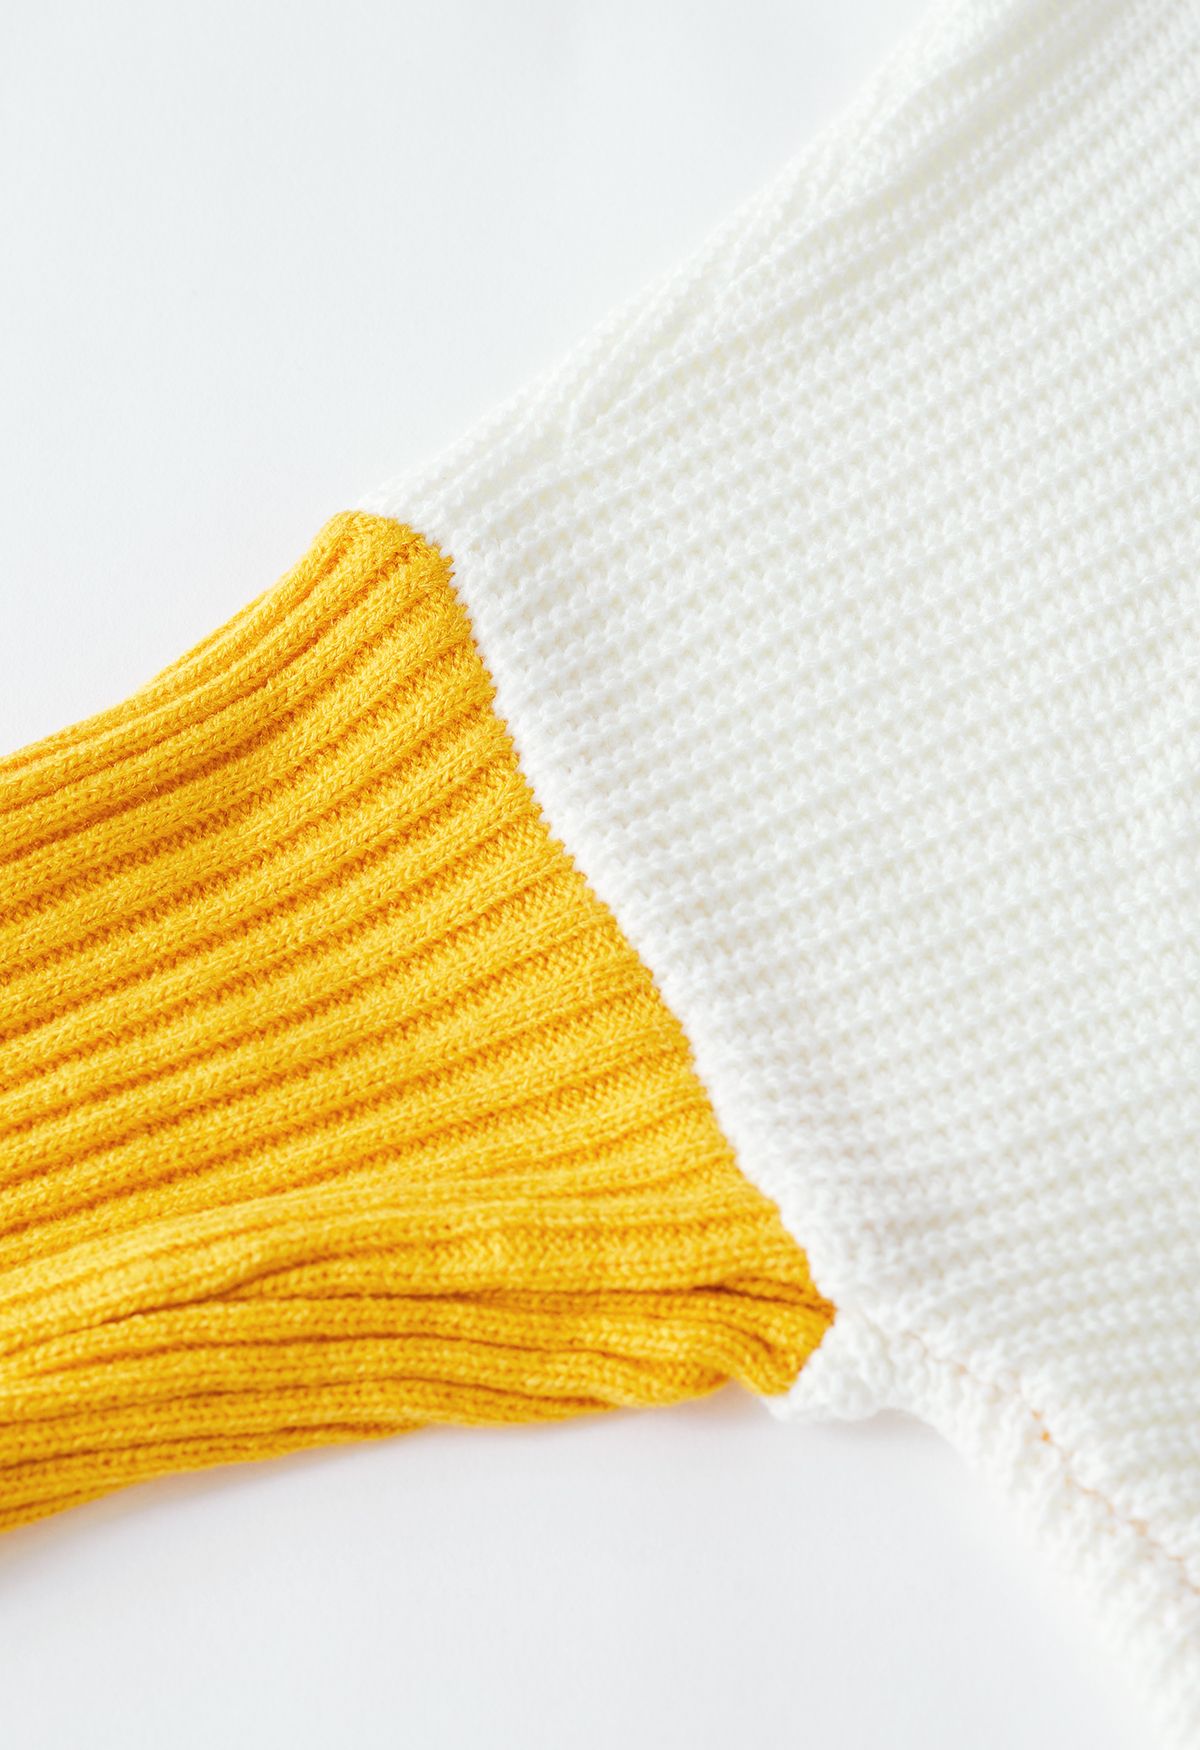 Suéter Hi-Lo con cuello alto y manga de murciélago elegante sin esfuerzo en amarillo